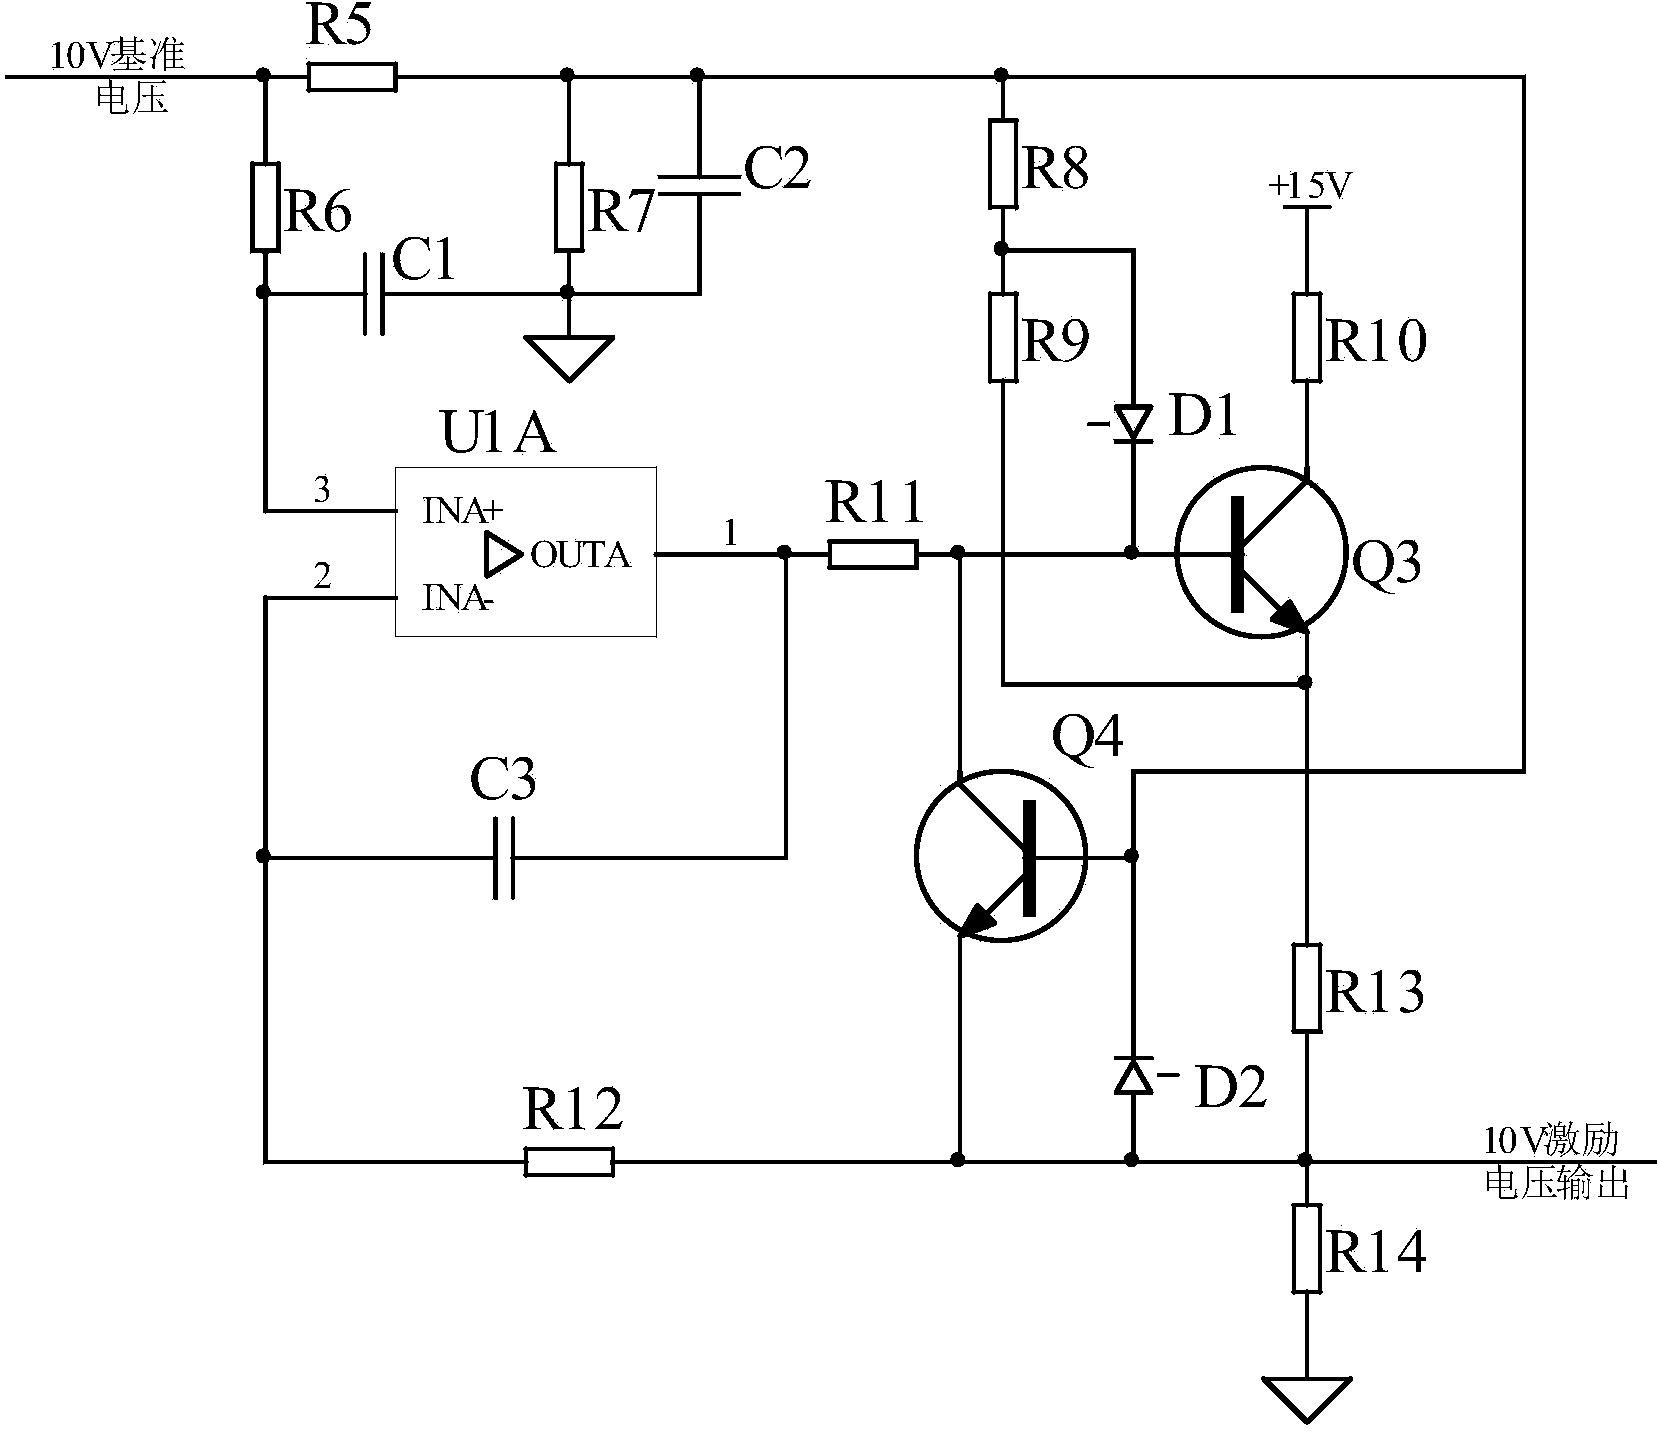 Detection circuit for pressure sensor of aeroengine